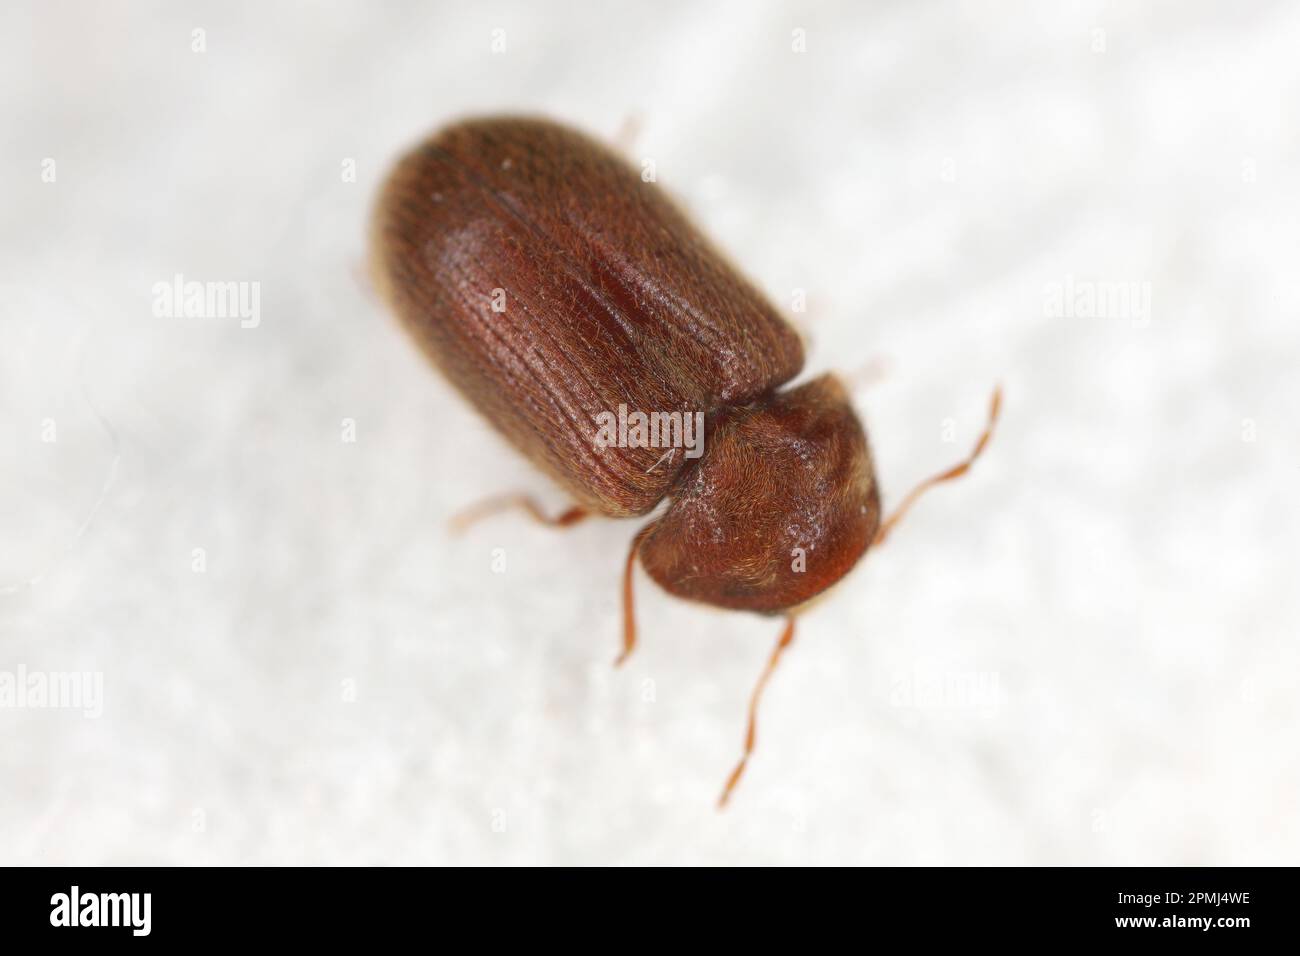 Drugstore beetle, drug store weevil, biscuit beetle also called bread beetle (Stegobium paniceum). Stock Photo